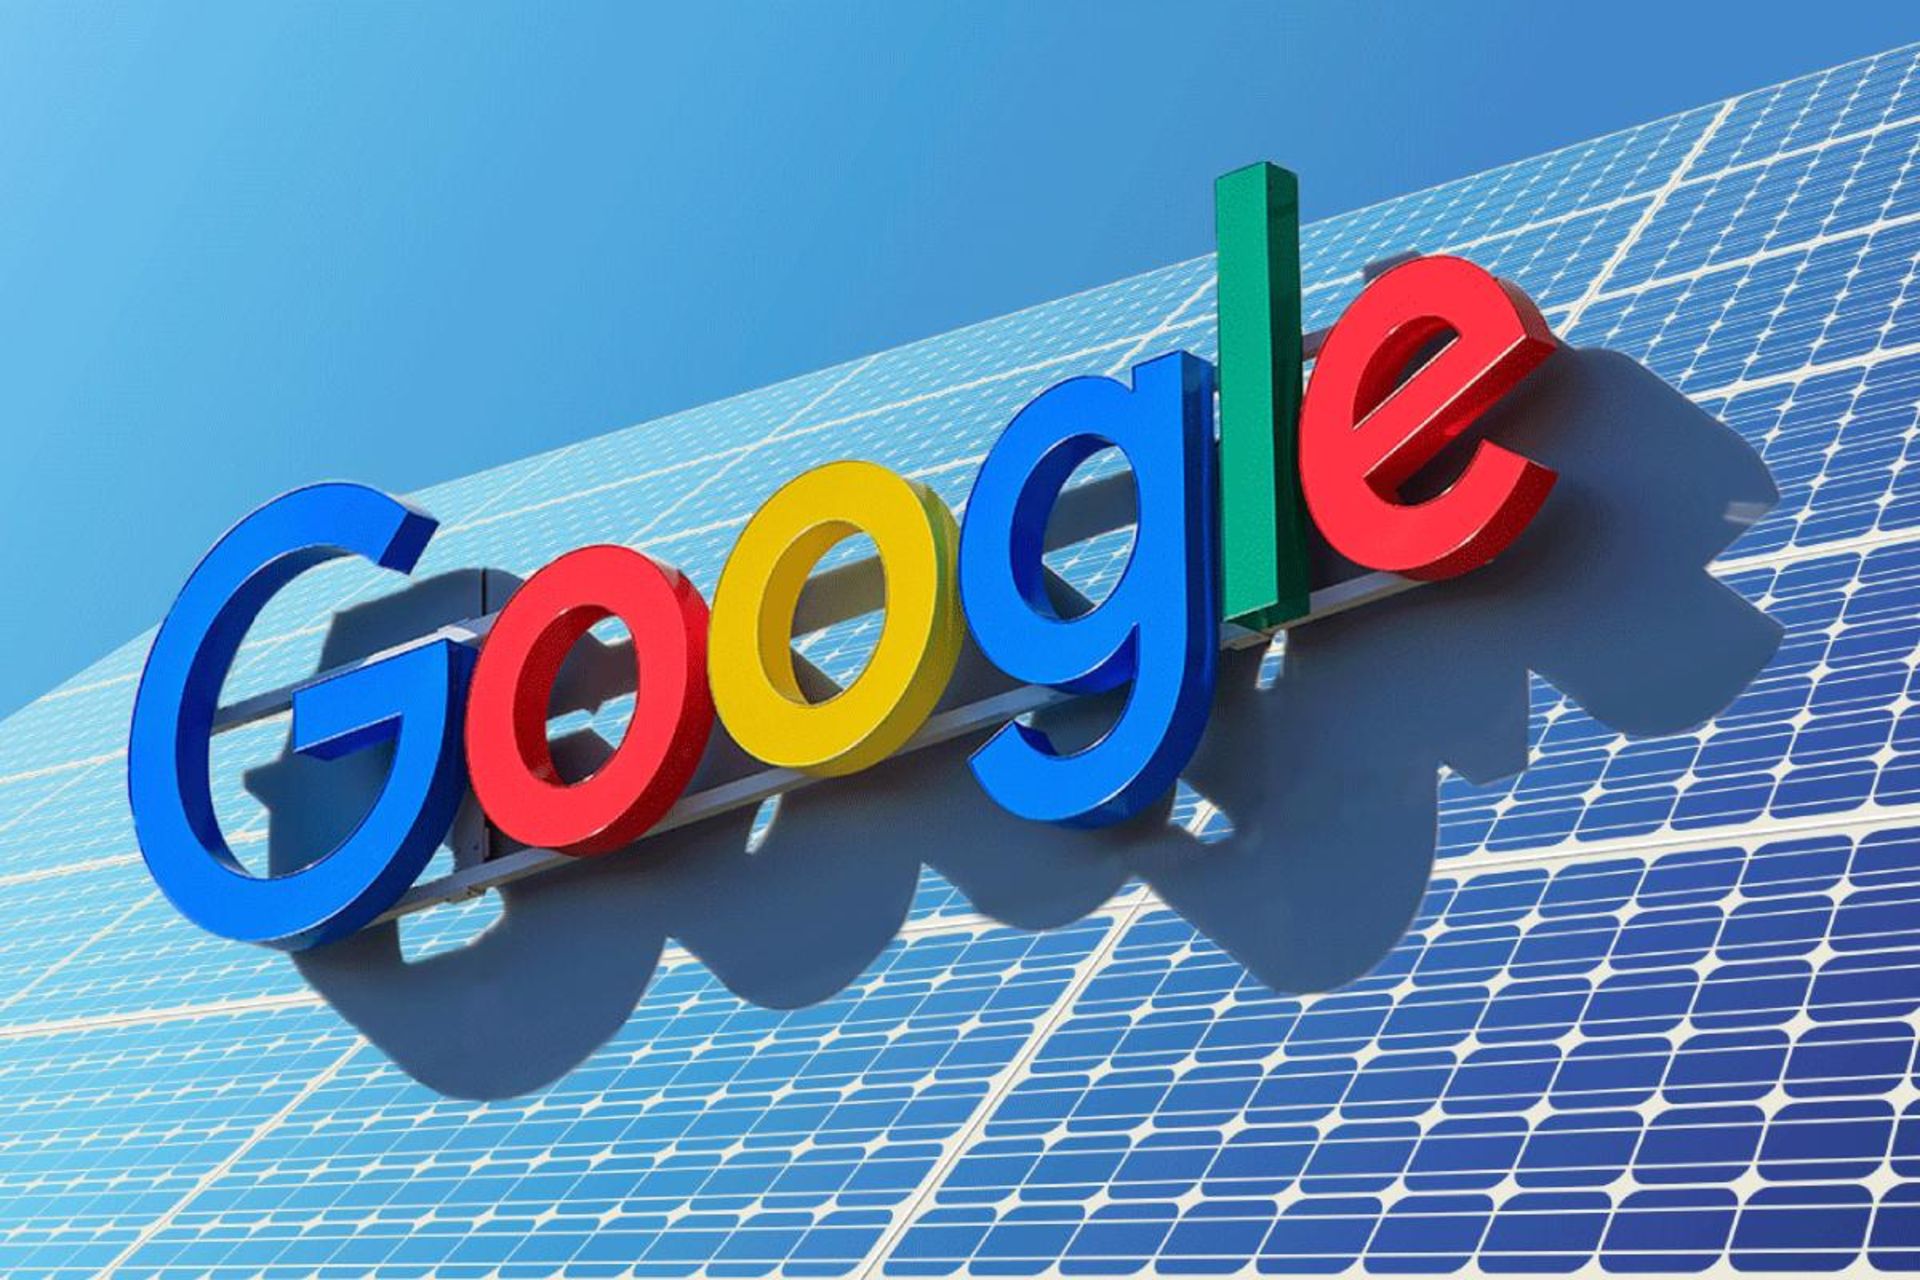 لوگو گوگل روی پنل های خورشیدی